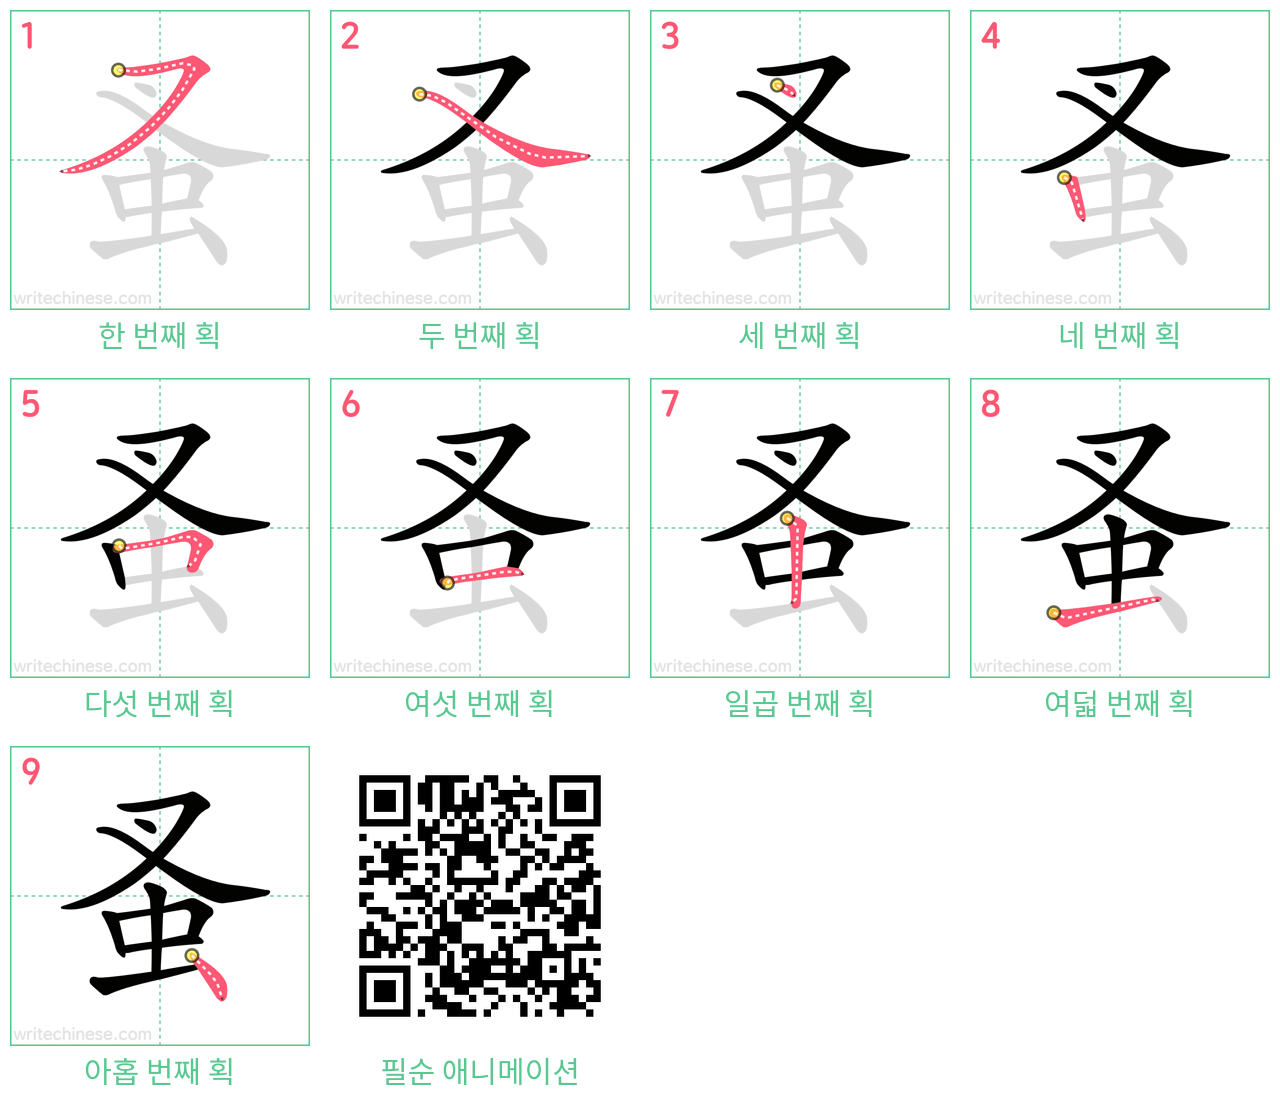 蚤 step-by-step stroke order diagrams